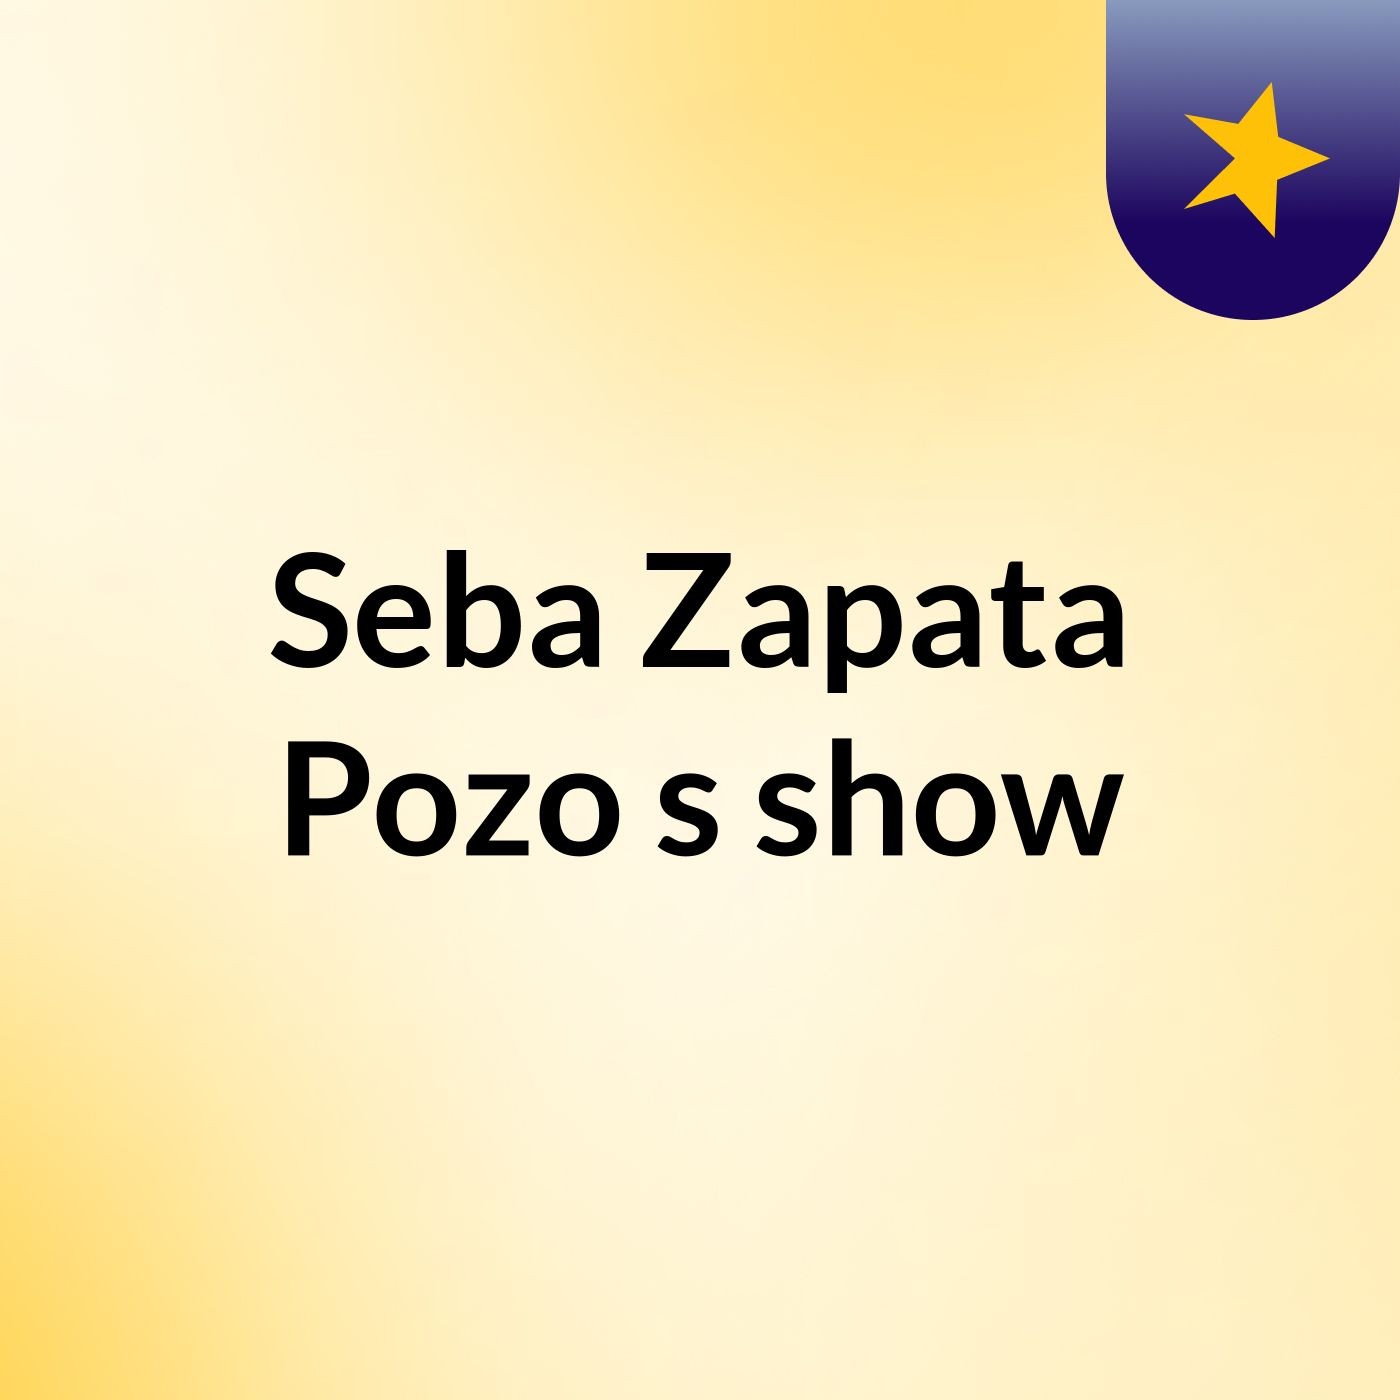 Seba Zapata Pozo's show